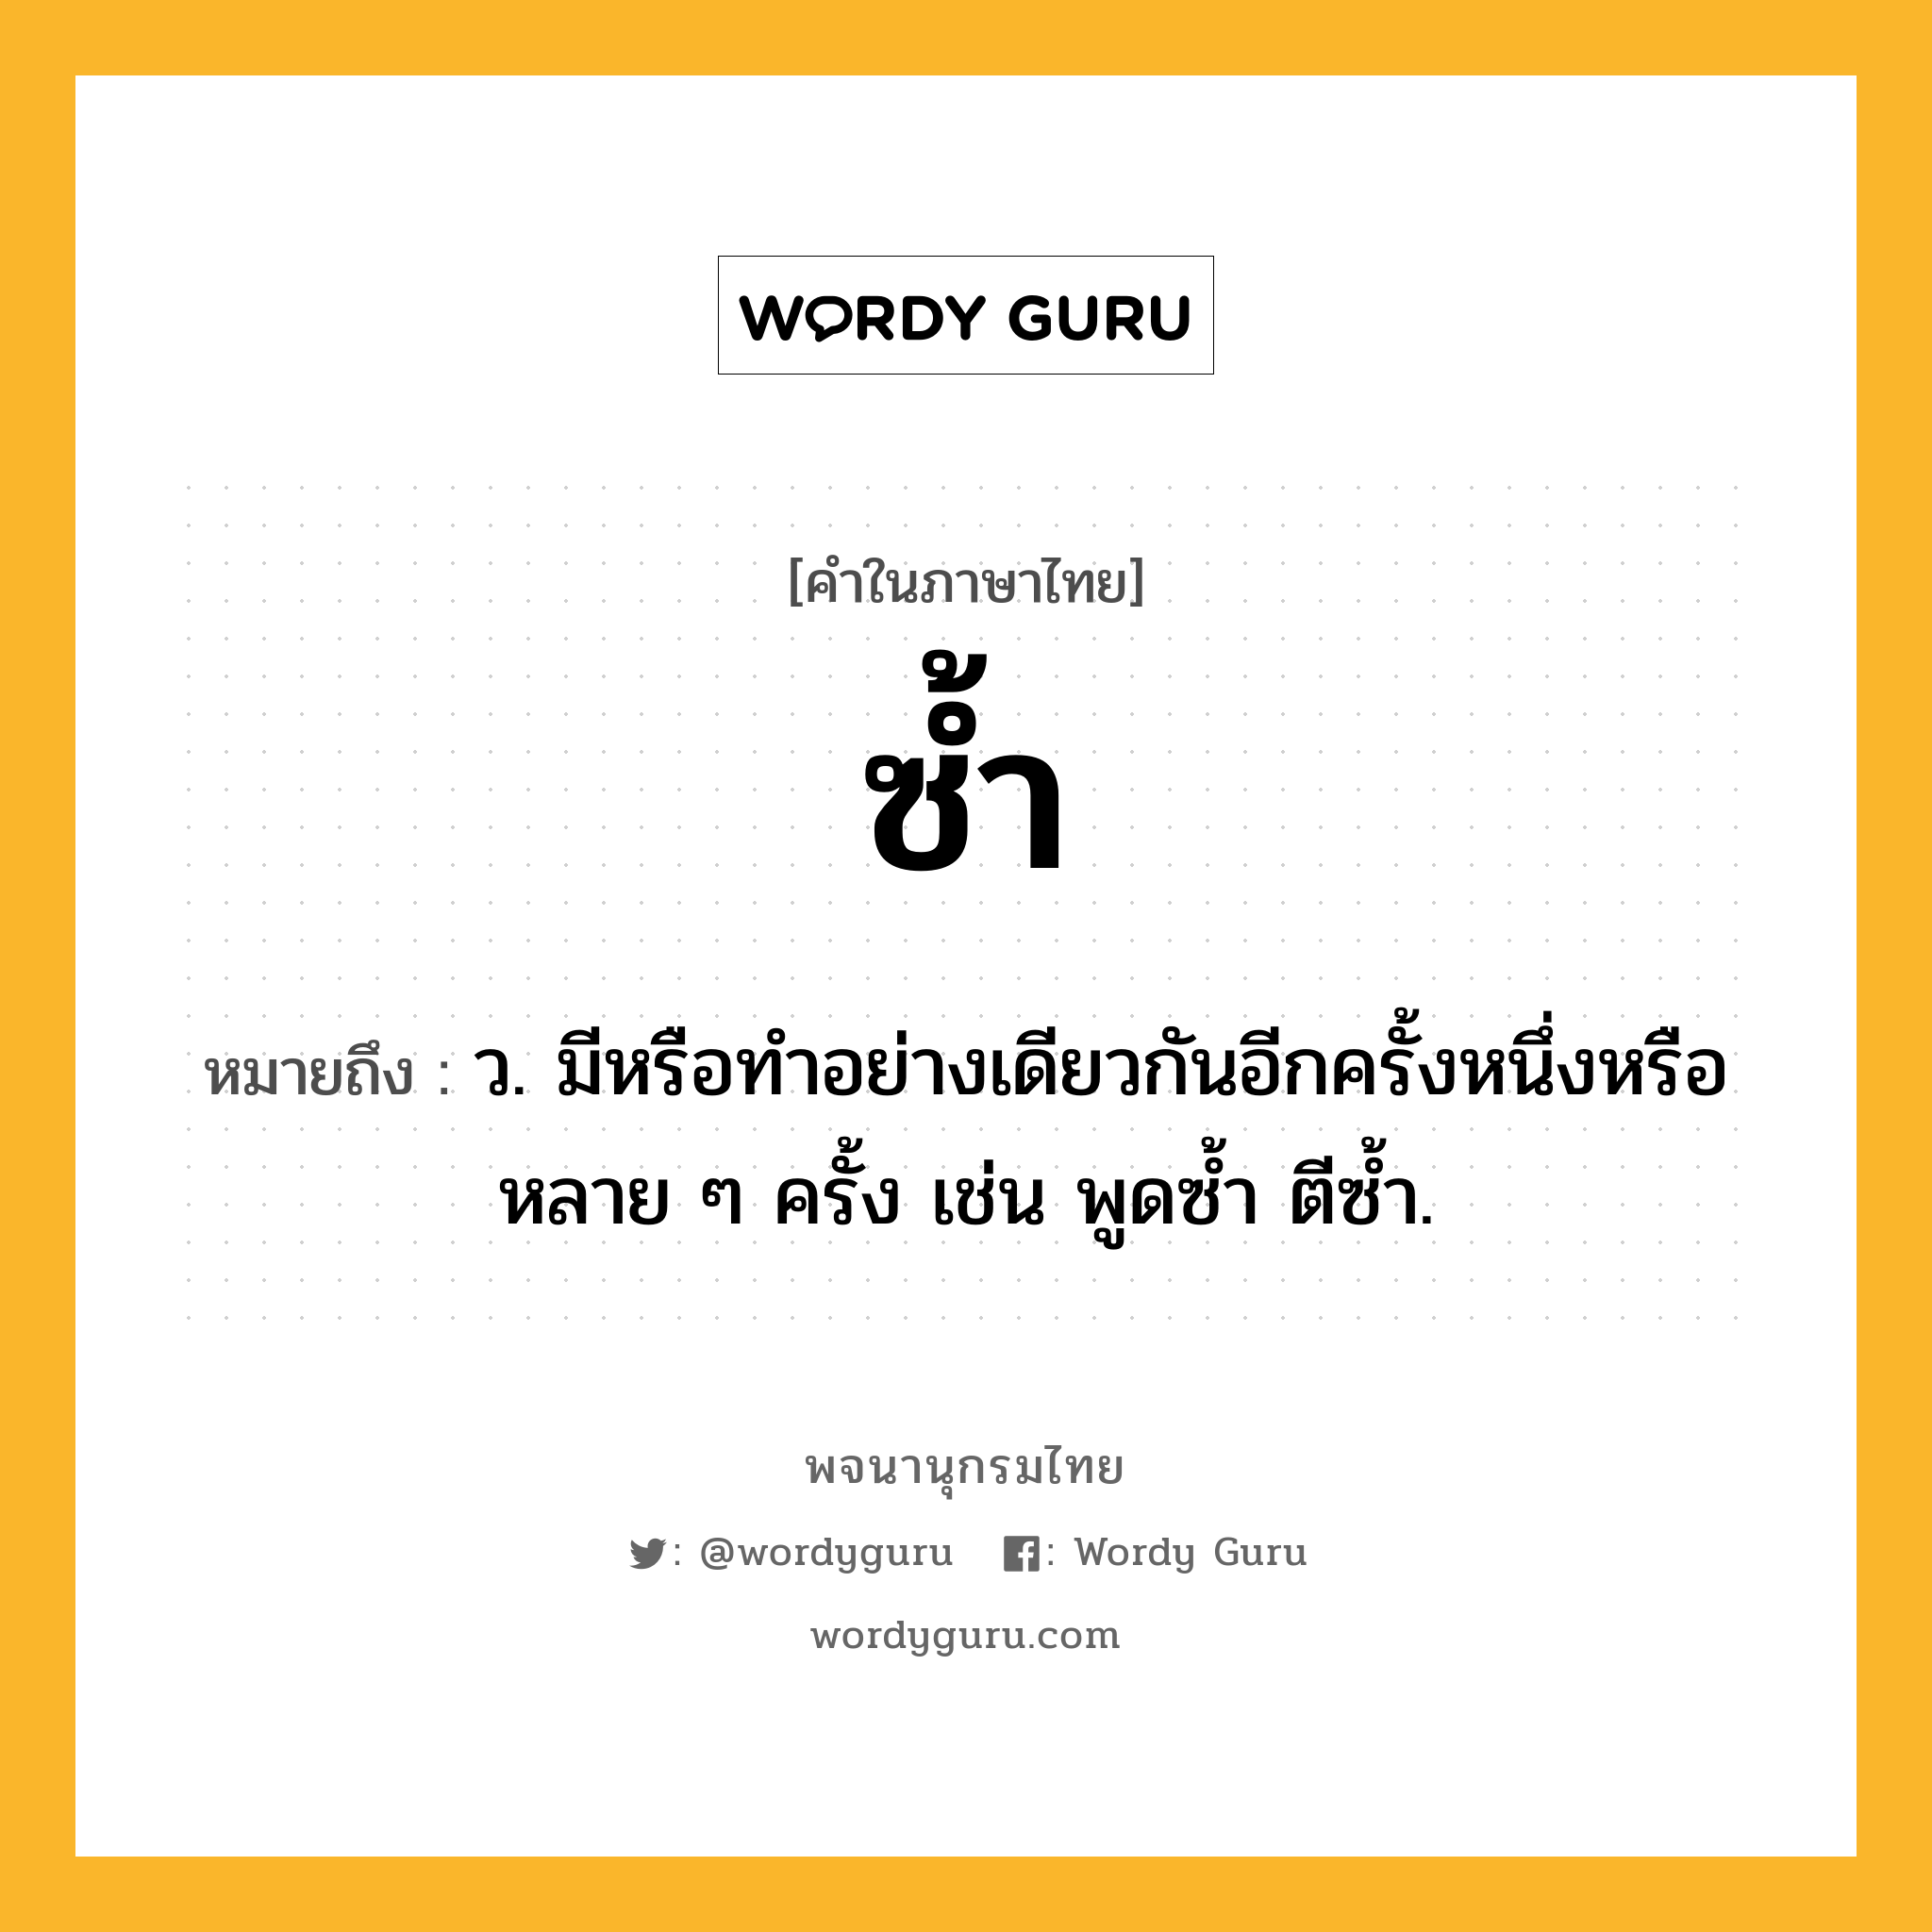 ซ้ำ หมายถึงอะไร?, คำในภาษาไทย ซ้ำ หมายถึง ว. มีหรือทําอย่างเดียวกันอีกครั้งหนึ่งหรือหลาย ๆ ครั้ง เช่น พูดซํ้า ตีซํ้า.